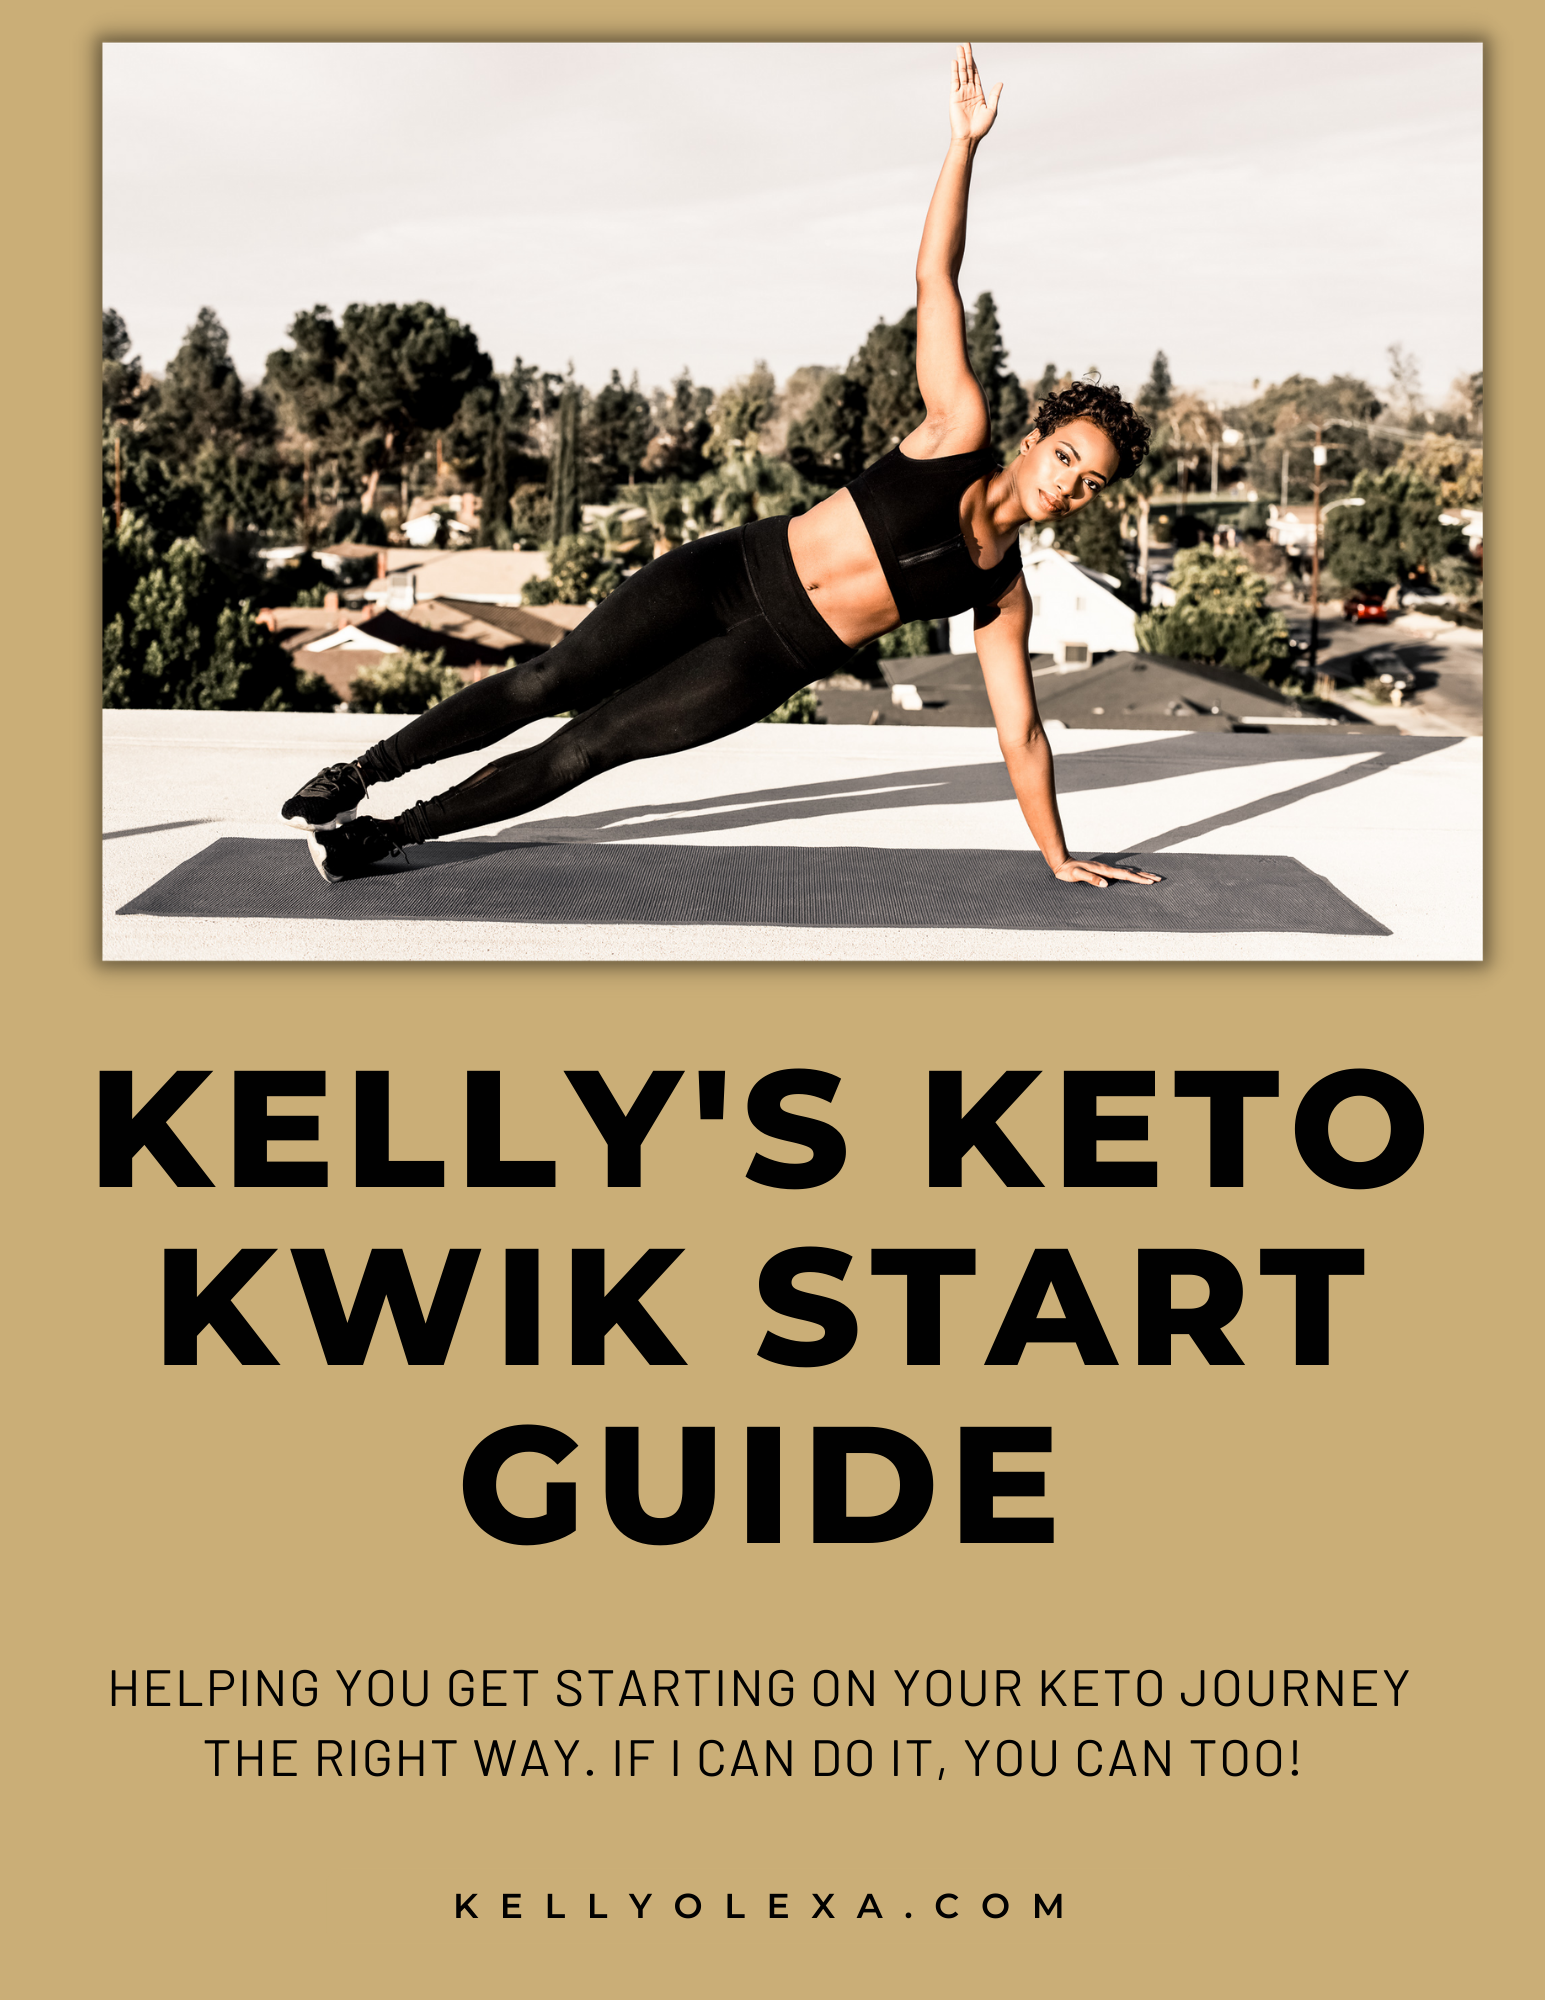 Kelly's Keto Kwik Start Guide